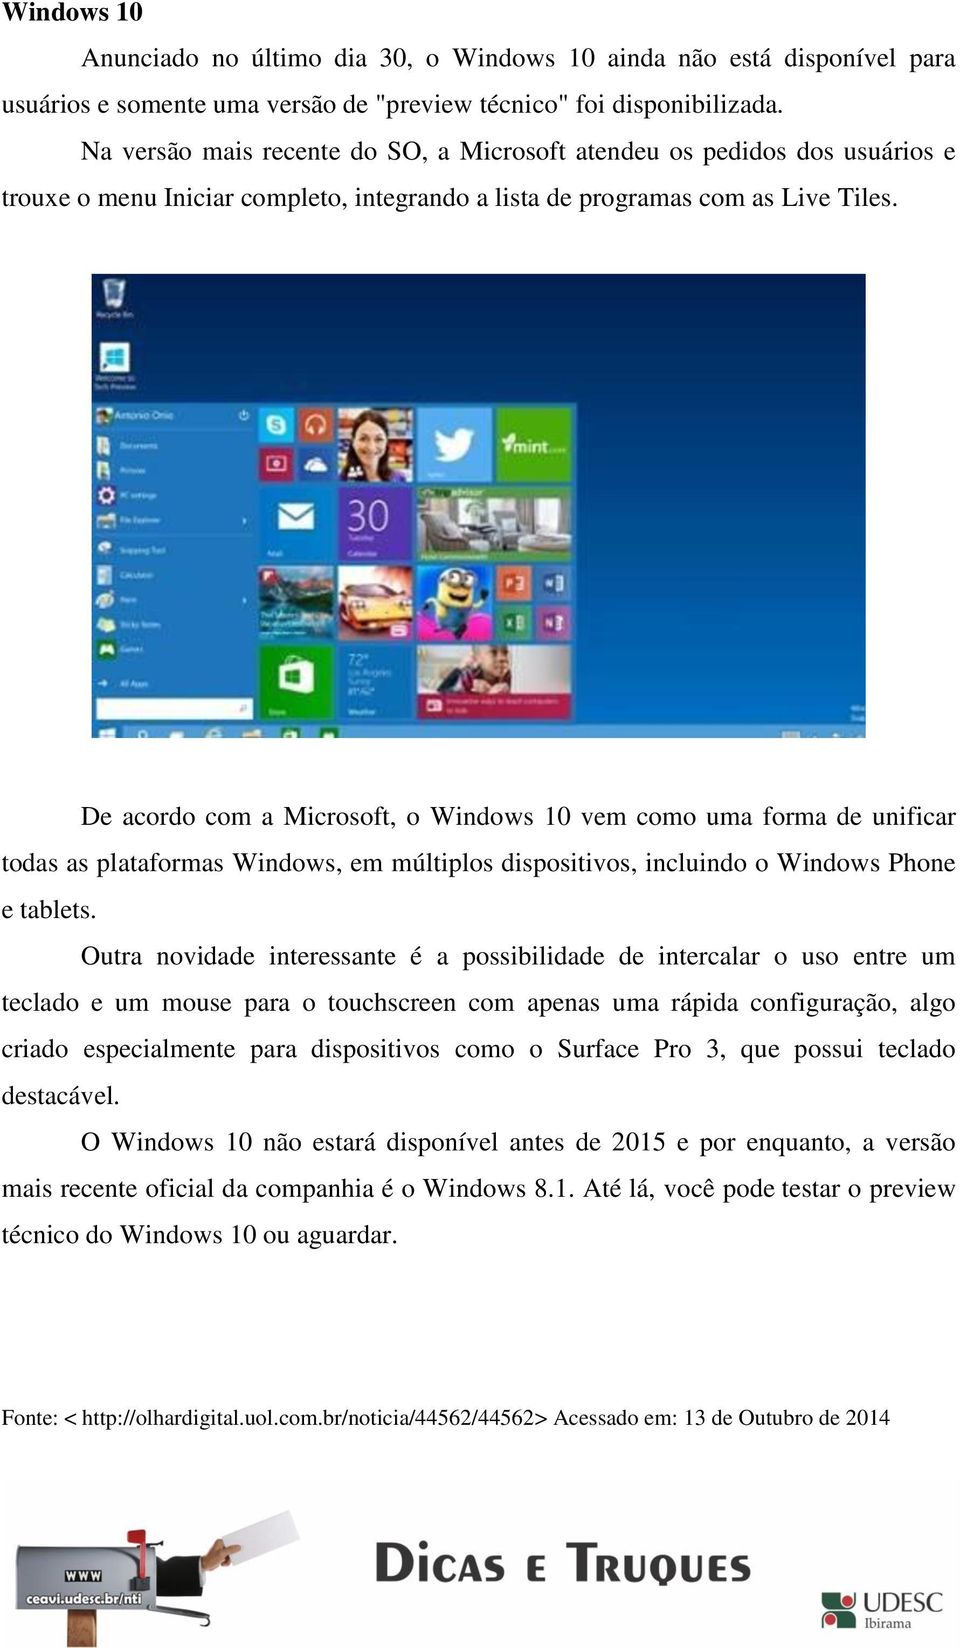 De acordo com a Microsoft, o Windows 10 vem como uma forma de unificar todas as plataformas Windows, em múltiplos dispositivos, incluindo o Windows Phone e tablets.